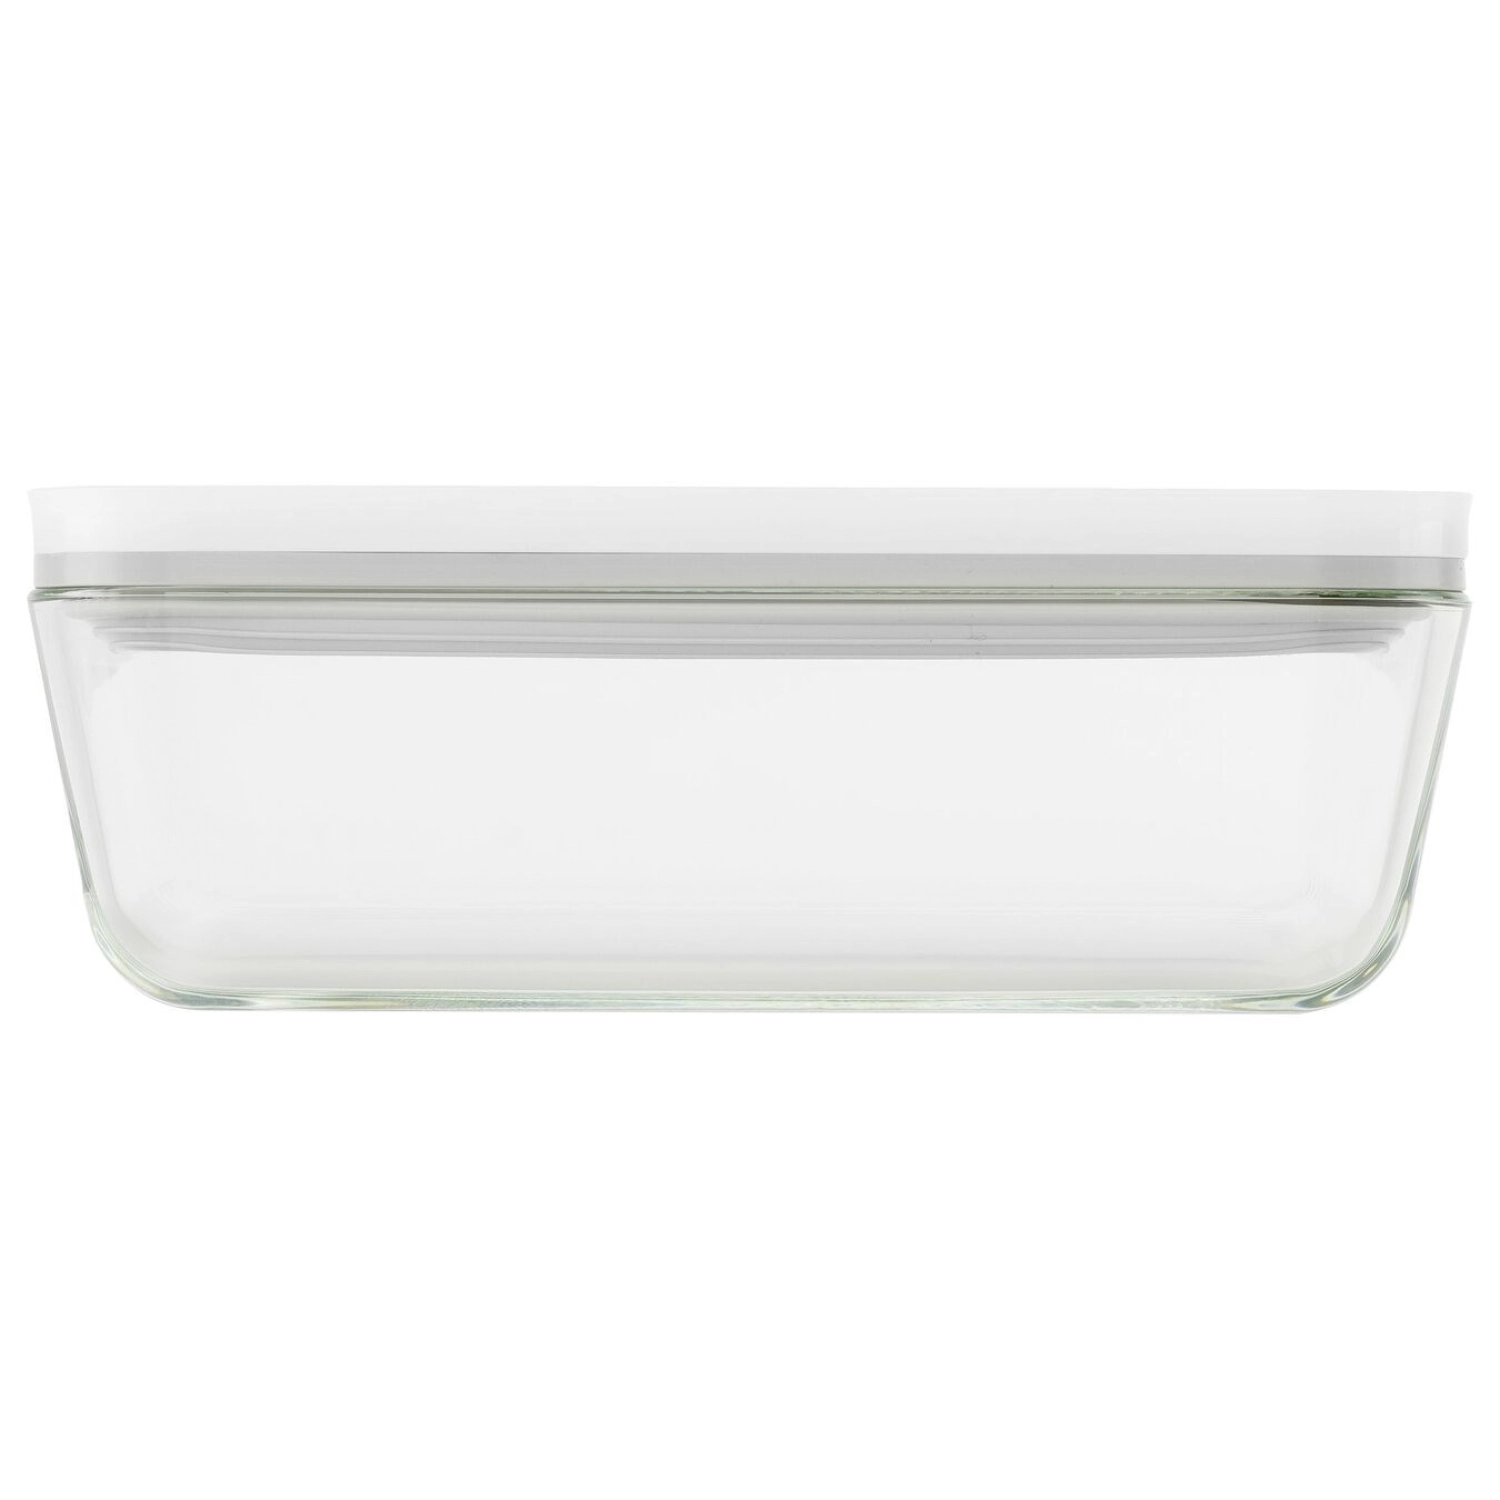 Boîte à vide pour réfrigérateur, verre, 24.1x18.1x9.7 cm